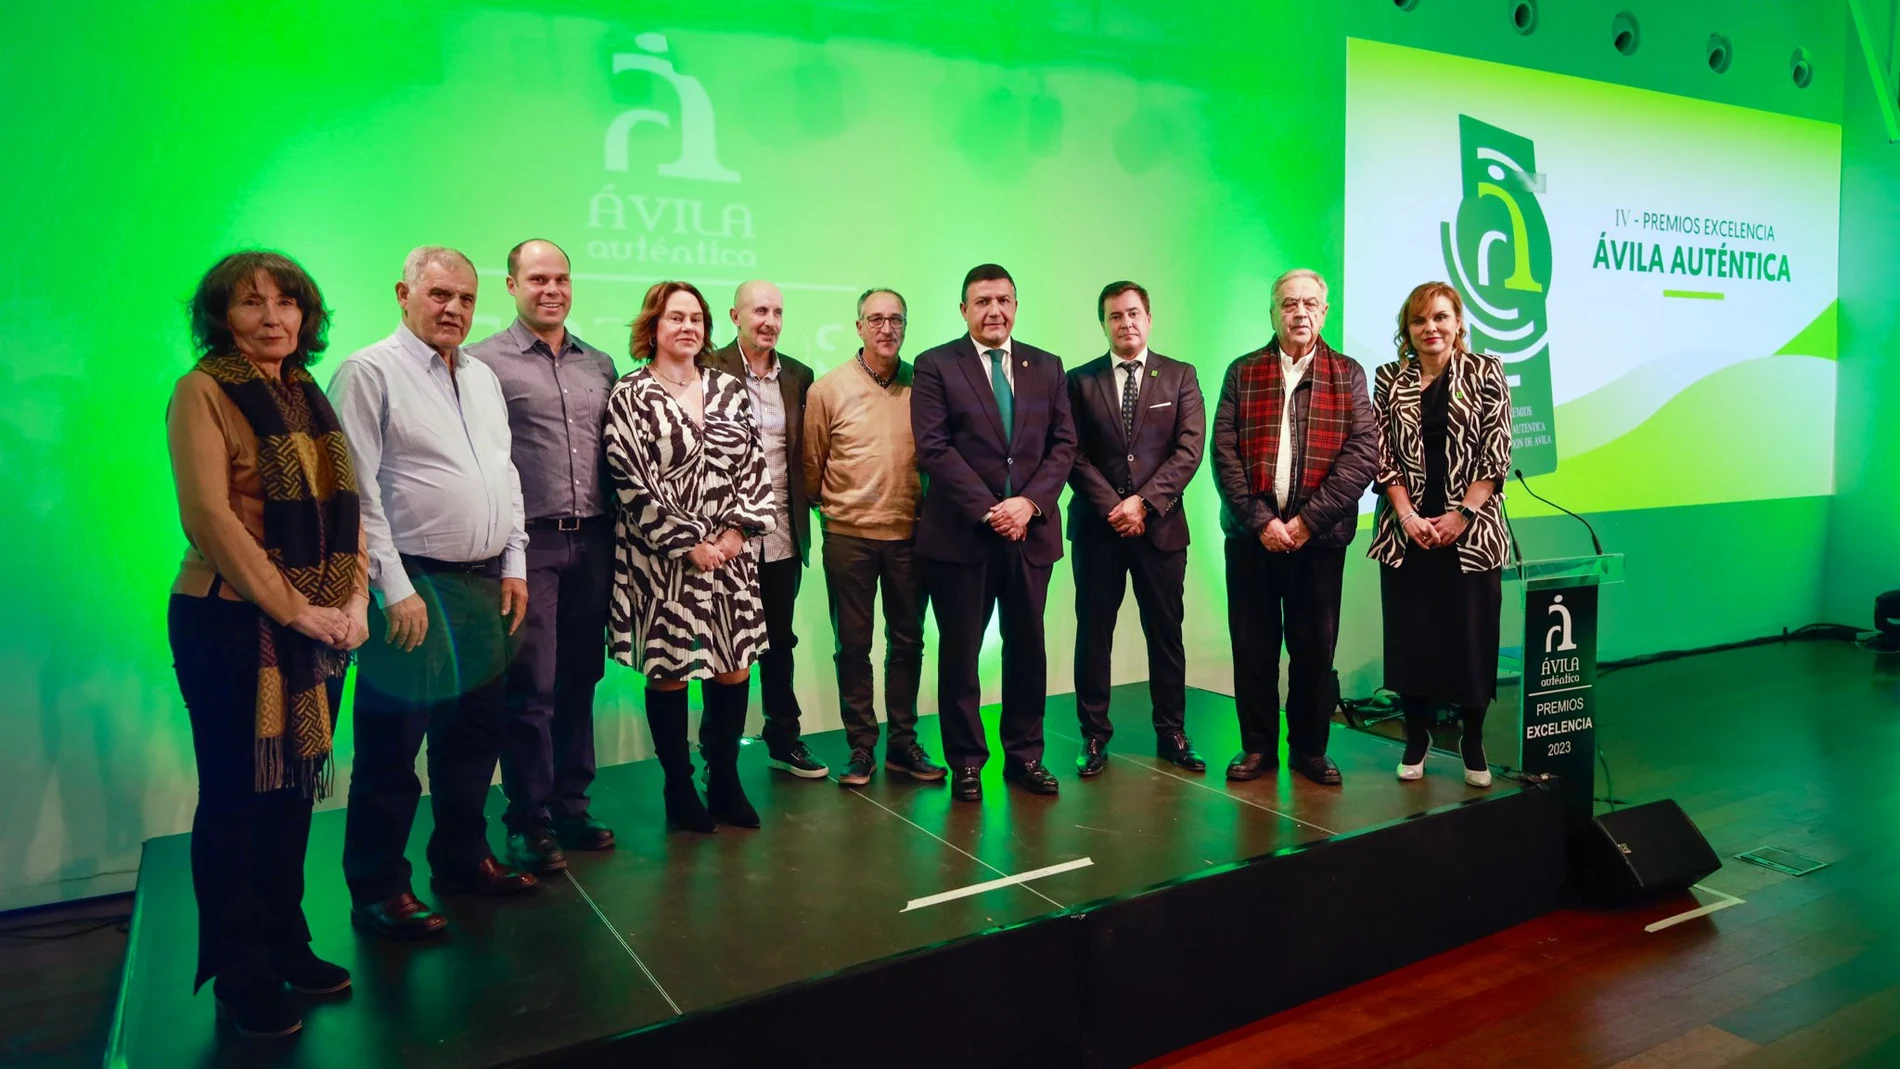 El presidente de la Diputación de Ávila, Carlos García, junto a los empresarios galardonados por Ávila Auténtica